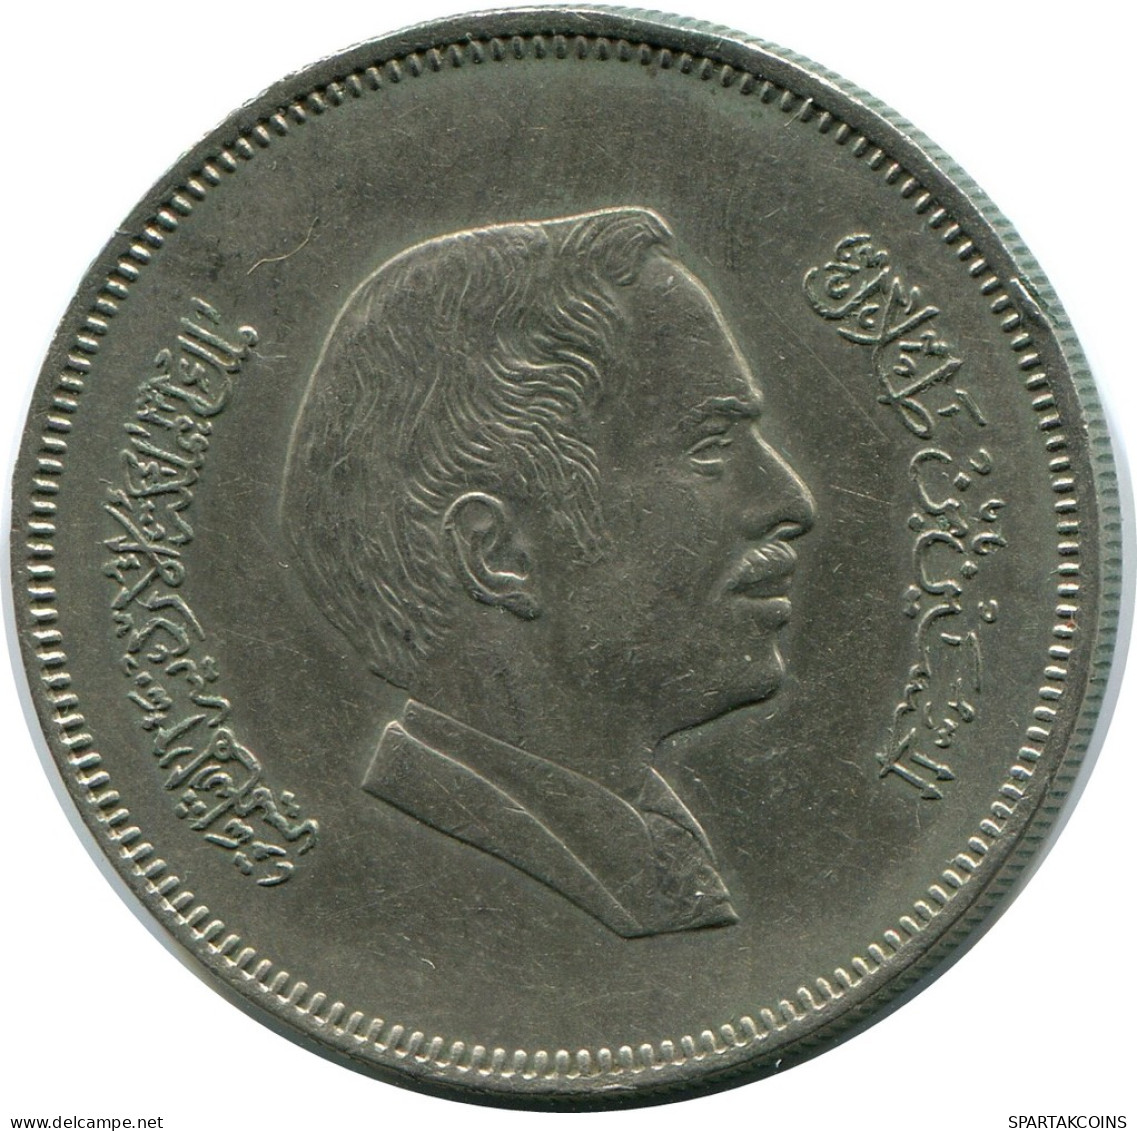 ½ DIRHAM / 50 FILS 1978 JORDAN Coin #AP074.U - Jordan